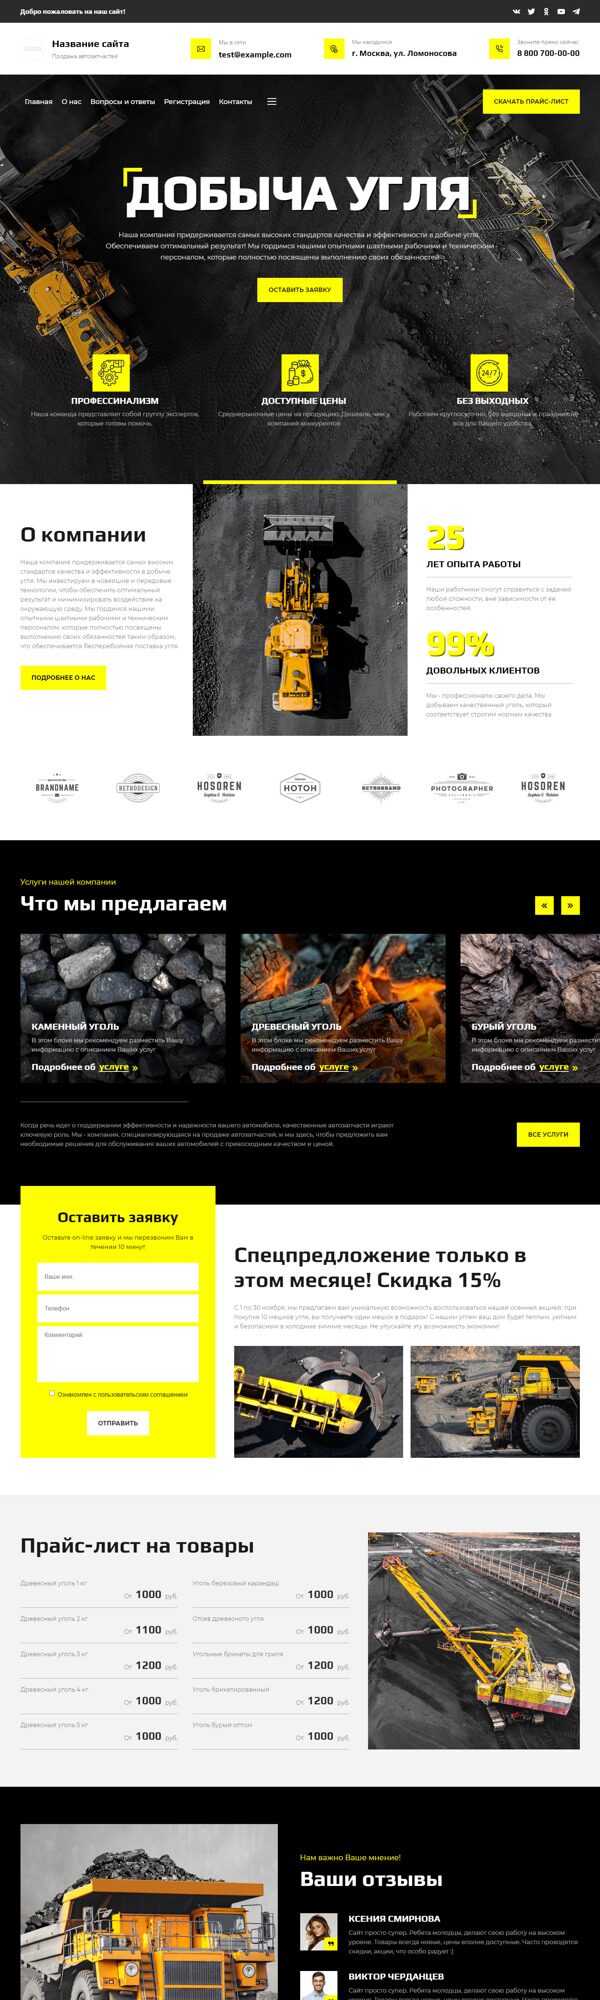 Готовый Сайт-Бизнес № 5455010 - Добыча и поставка угля (Десктопная версия)